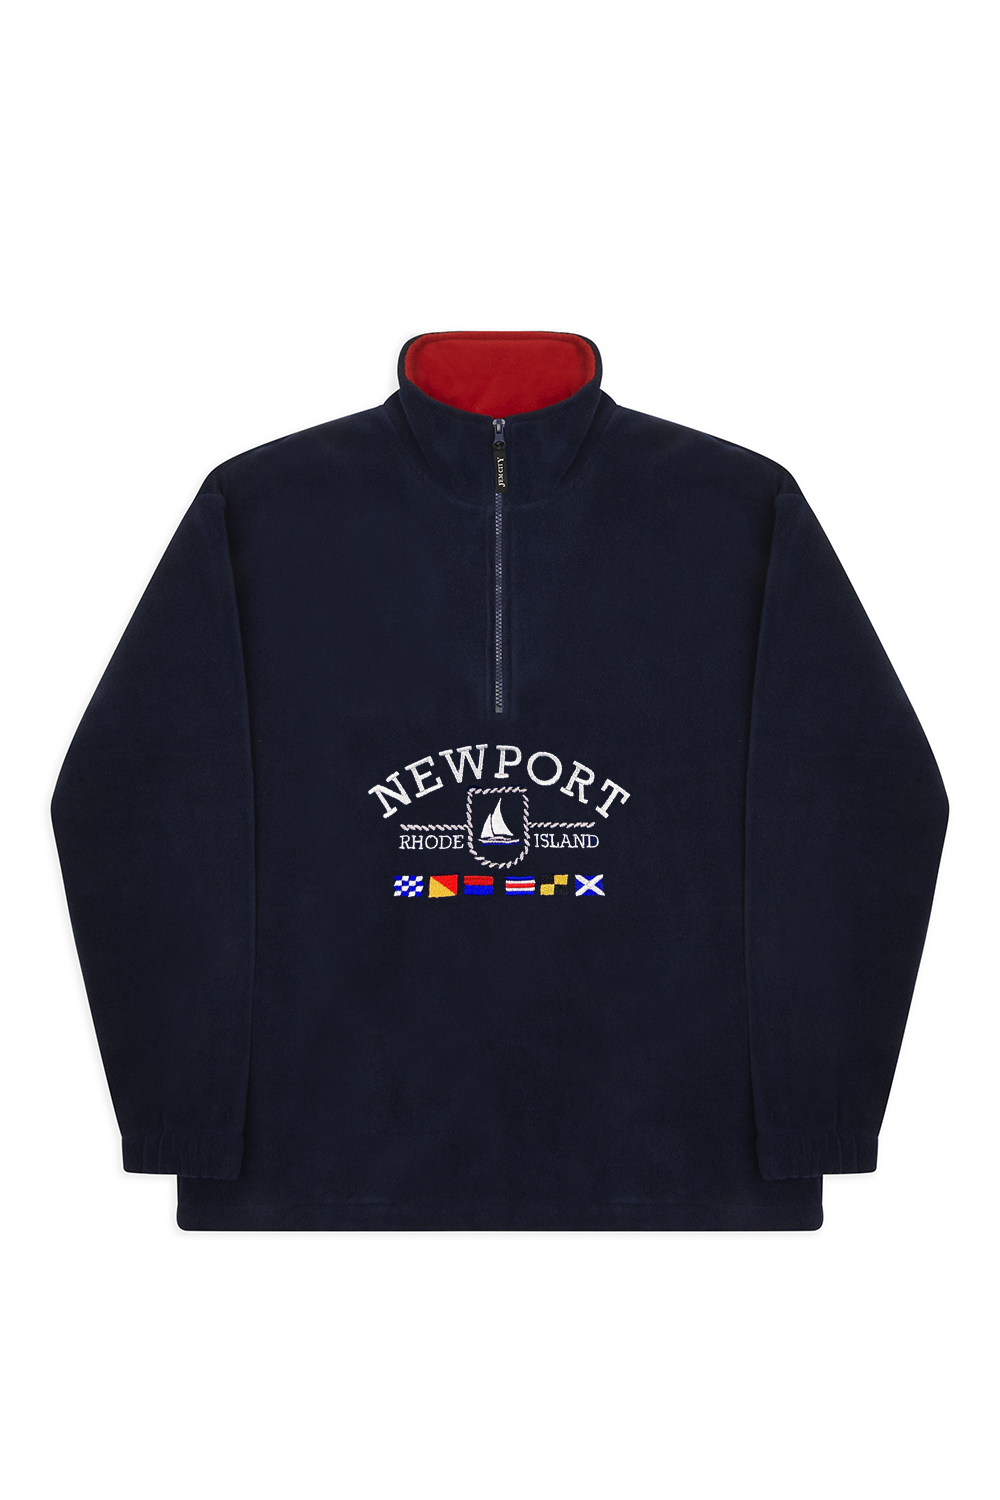 Newport Fleece Navy